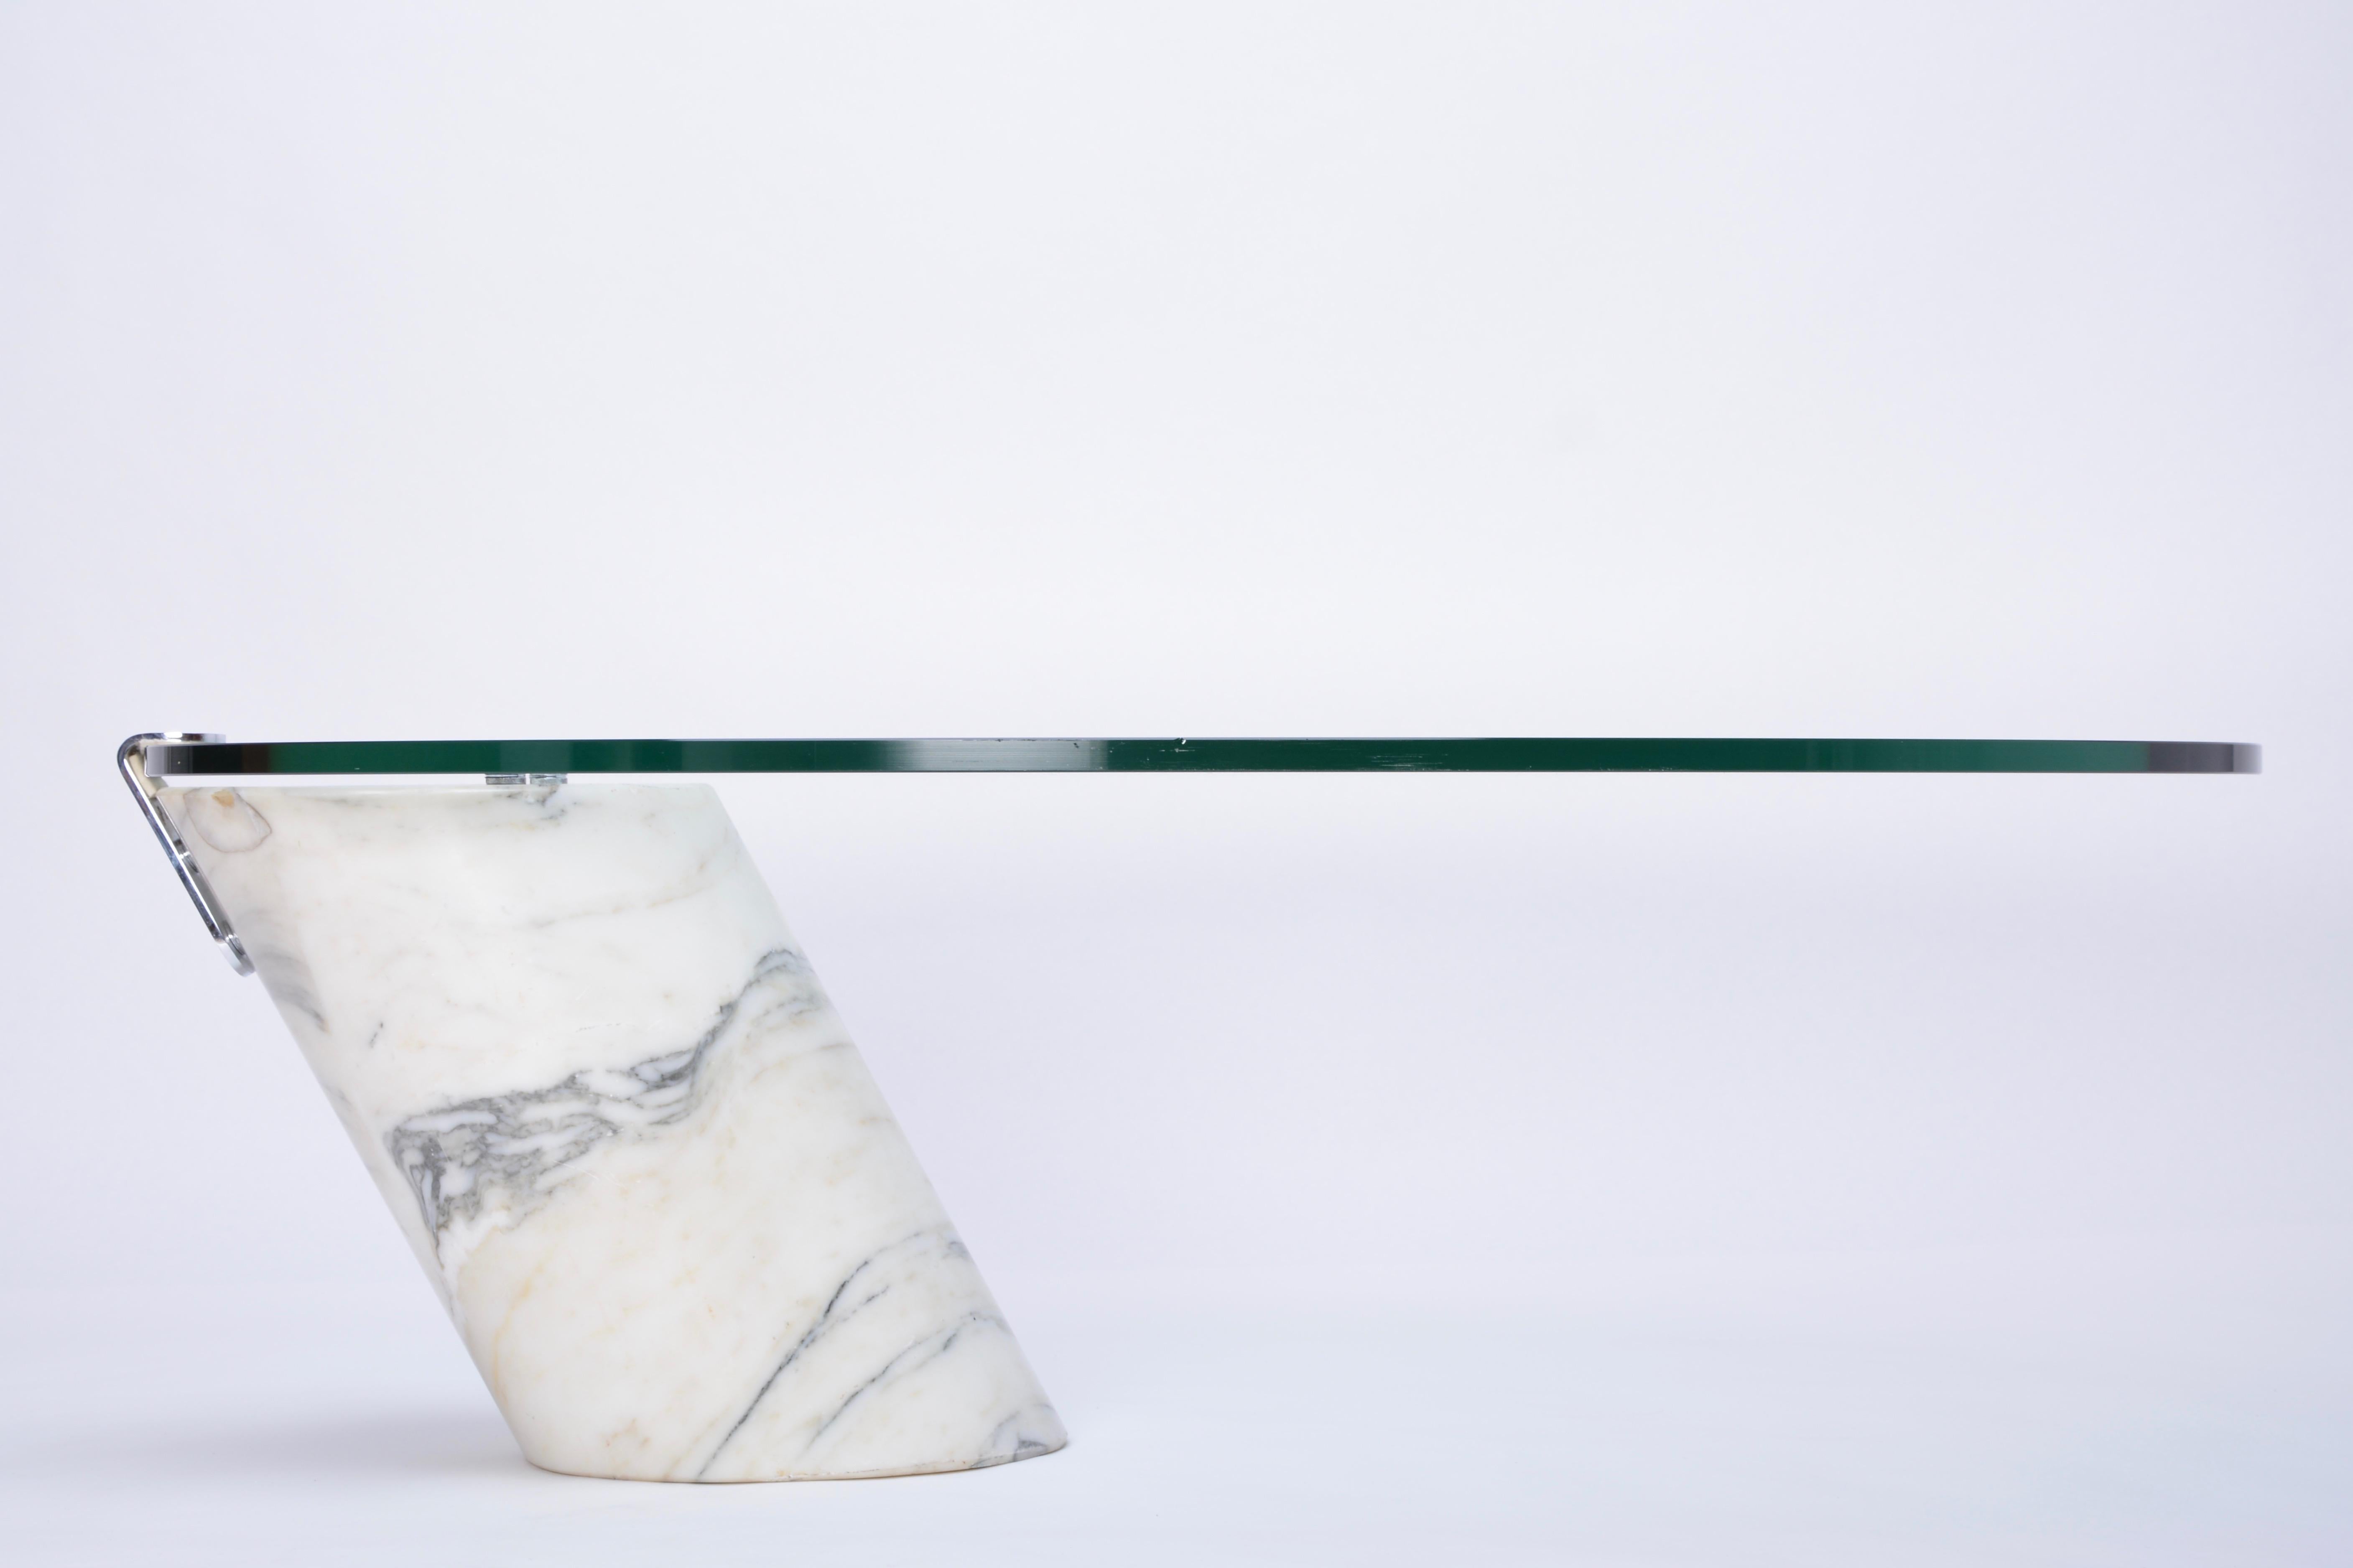 Table basse en marbre blanc et verre Modèle K1000 par Team Form pour Ronald Schmitt

Table basse conçue par Team Form pour Ronald Schmitt dans les années 1970. La base de cette table est en marbre massif. L'épais plateau de verre ovale repose sur la